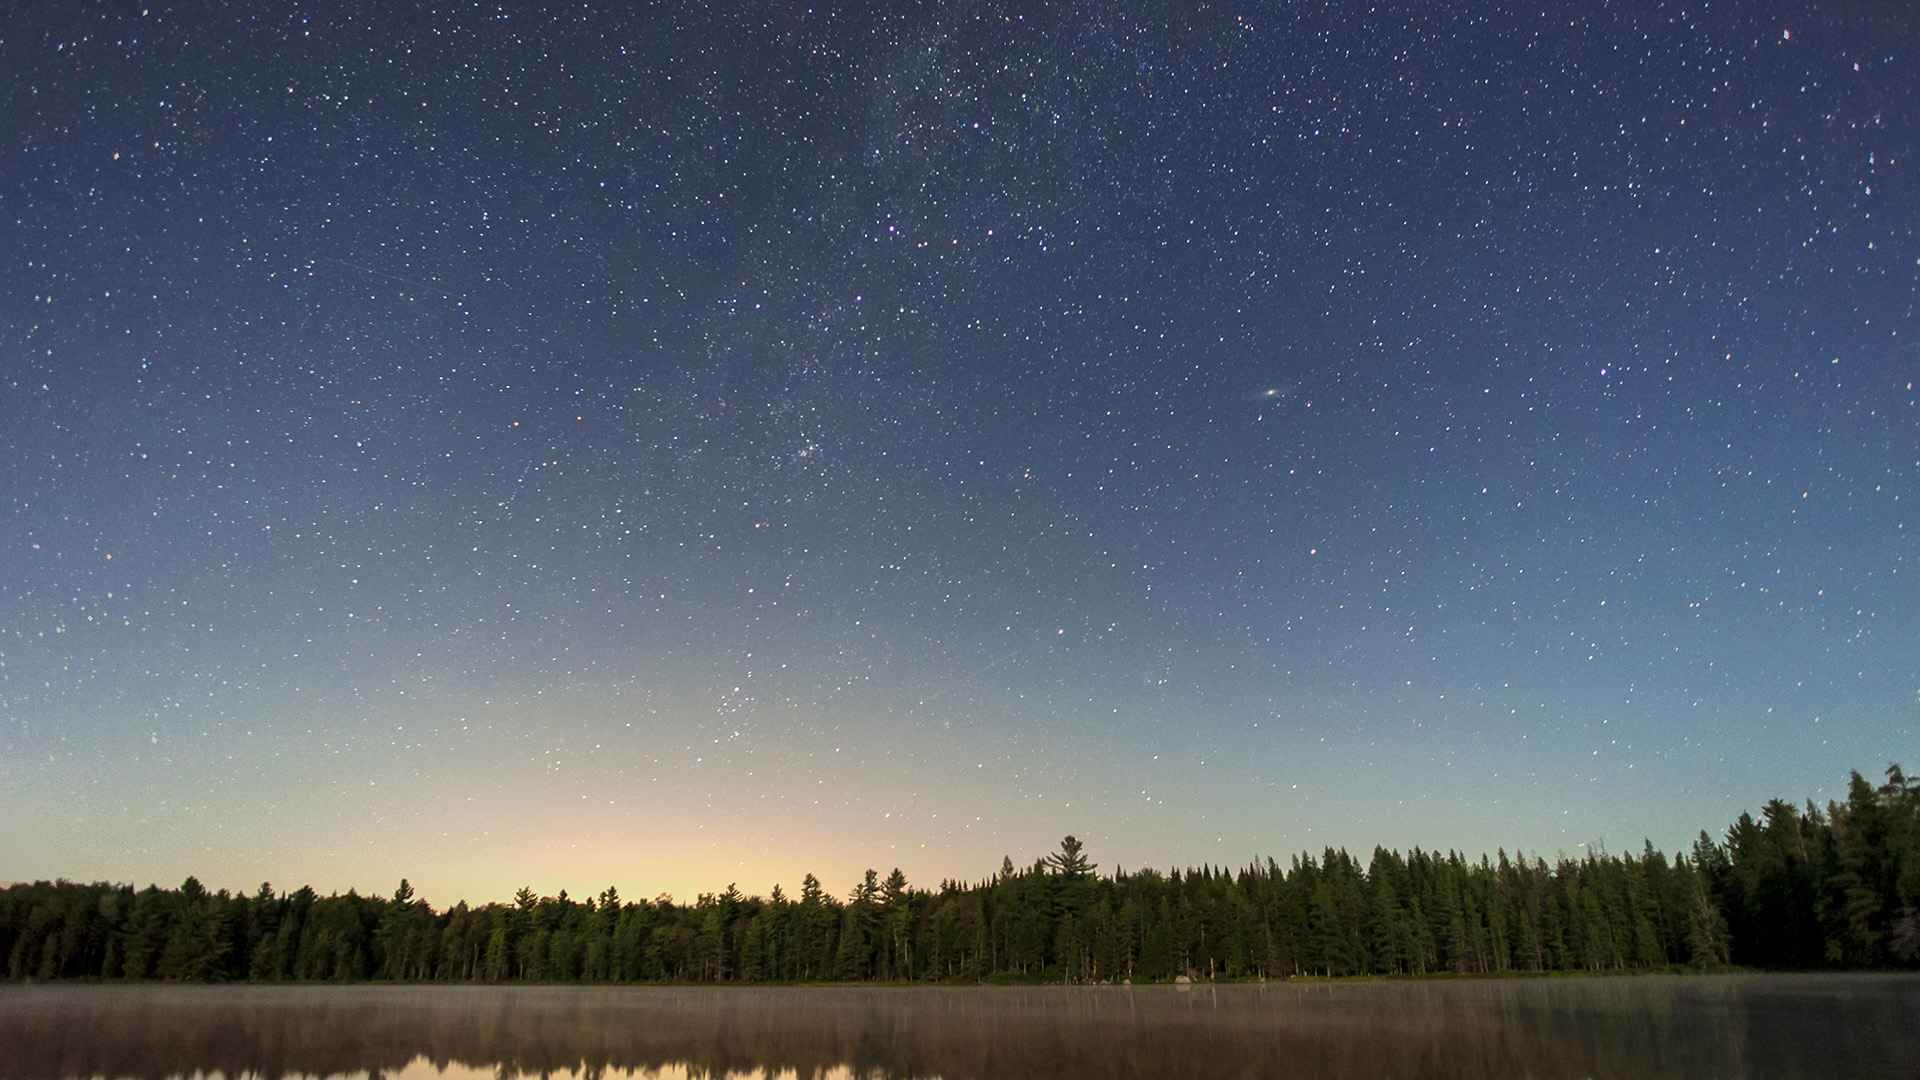 Las odbija się nocą w nieruchomym jeziorze, nad nim rozgwieżdżone niebo, widoczna część Drogi Mlecznej i Galaktyka Andromedy.